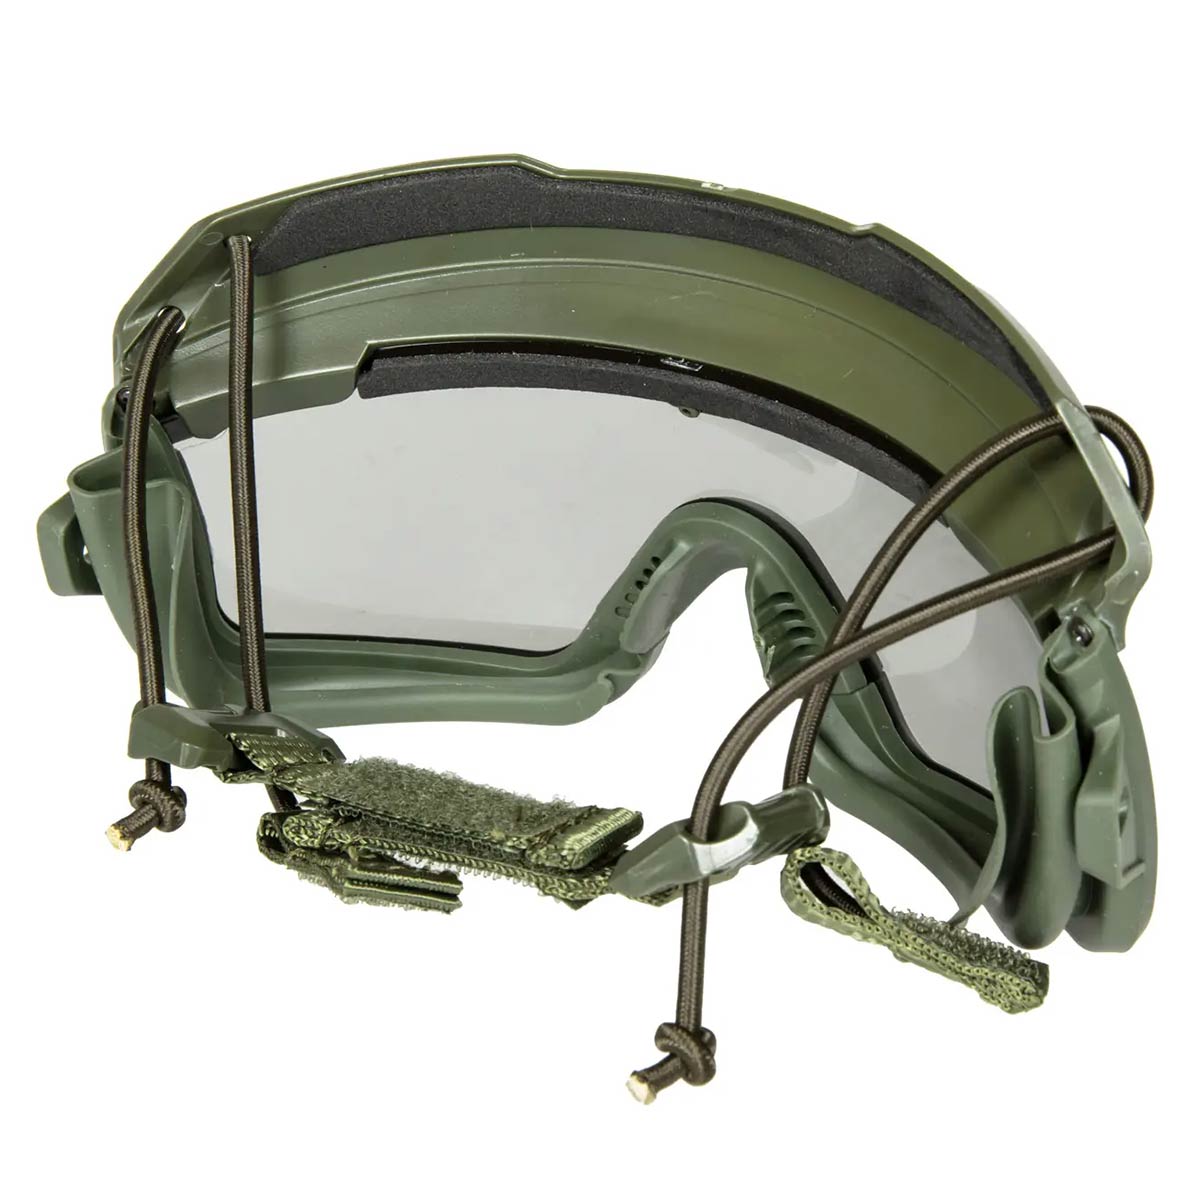 Тактичні окуляри-маска GFC Tactical 2 в 1 - Оливкові / Чорні